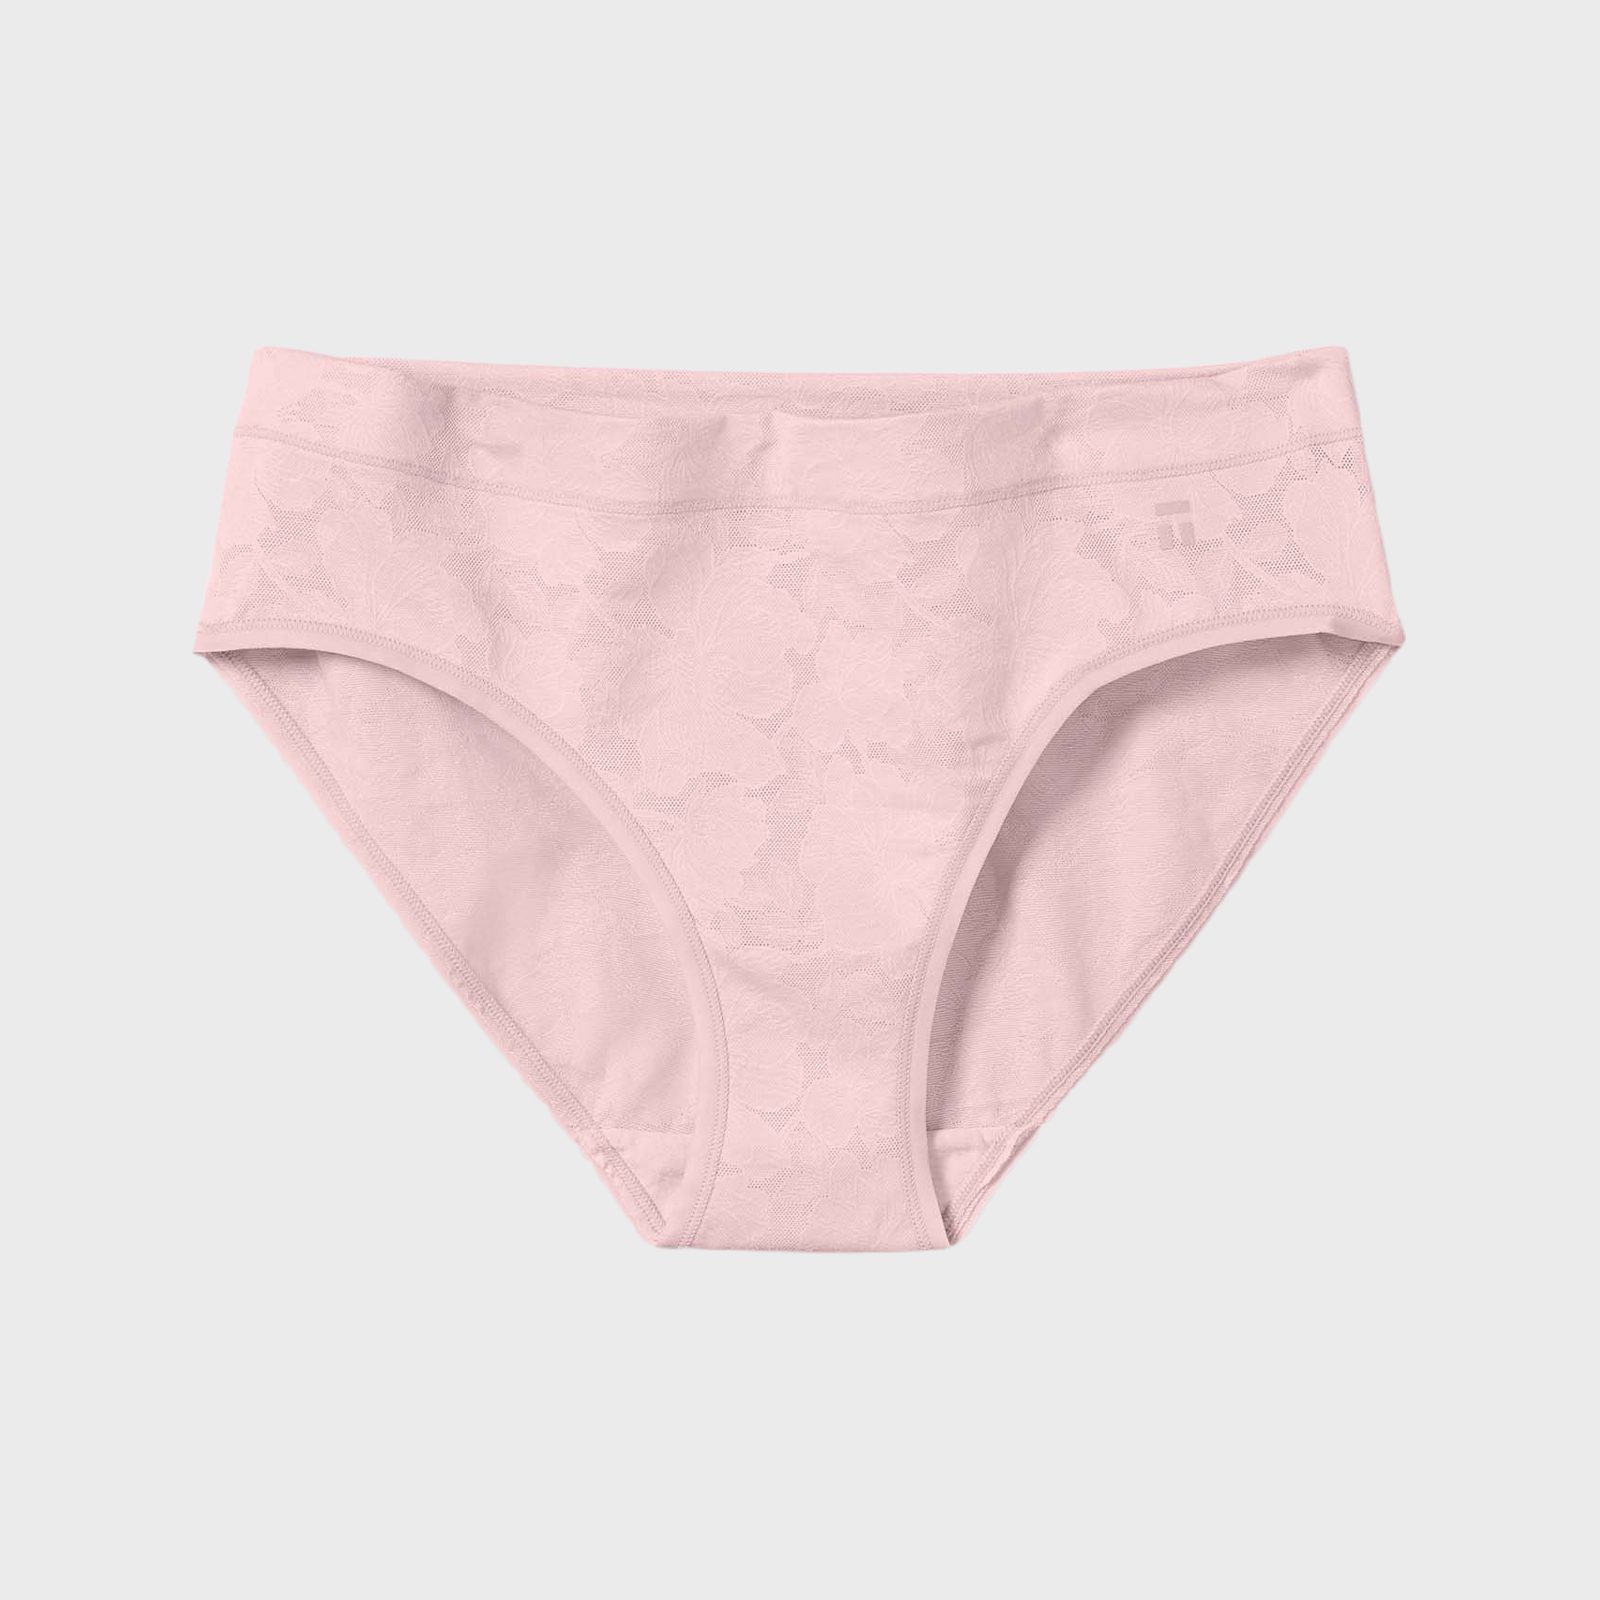  Tommy John Women's Underwear, Lace Thong, Second Skin